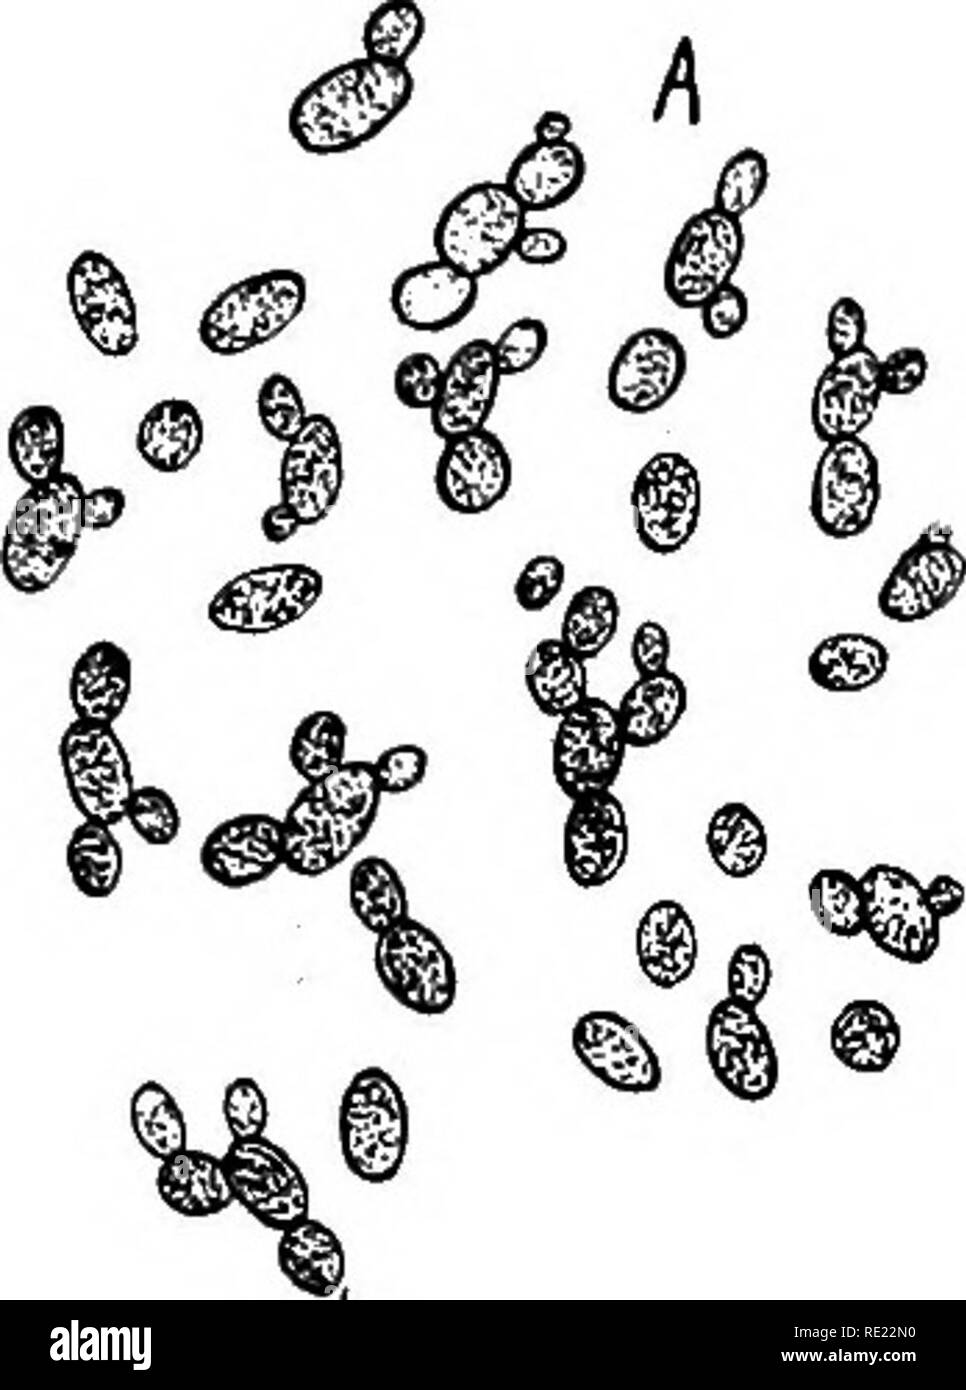 . Bactériologie pharmaceutique. Bactériologie, désinfection et de désinfectants. Les LEVURES ET MOISISSURES 305 la sauce soja japonaise (fermenté, le soja, Glycine hispidus), une soupe miso et stock de blé et de fèves de soja, est préparé par l'action de l'Aspergillus wentii oryza et A.. Les javanais arrak est fabriqué à base de riz qui sont d'abord traitées par un champignon (Ragi) à bien des égards semblable à ^. oryza, et par la suite, la fermentation alcoolique est menée par les Saccharomyces, ainsi, la méthode de fabrication arrak est étroitement similaire à. ^0 ^^ B 0 ®. Veuillez noter que ces images sont extraites de Banque D'Images